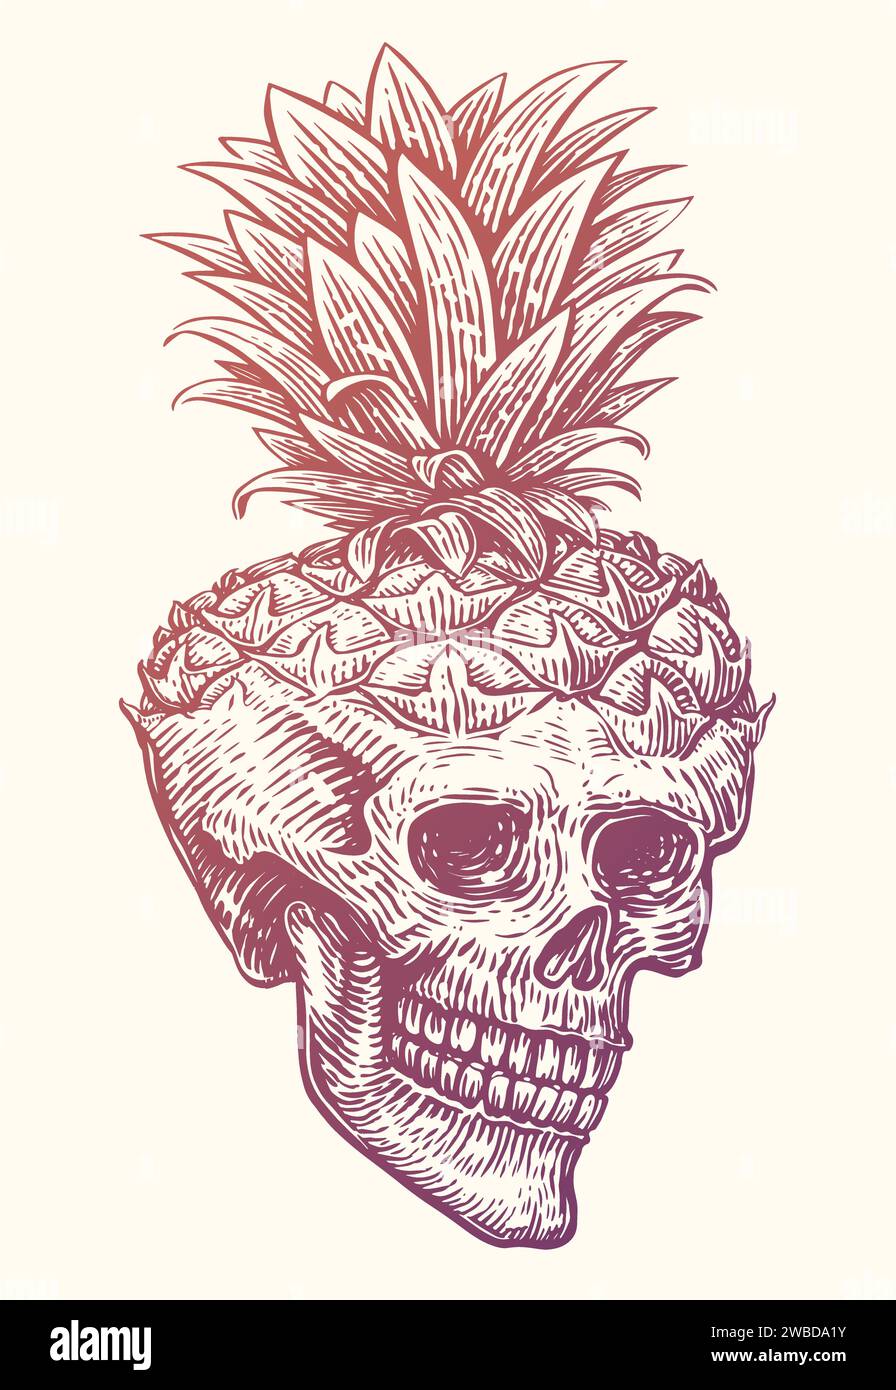 Ananas cranio umano. Illustrazione vettoriale di schizzi vintage disegnata a mano Illustrazione Vettoriale